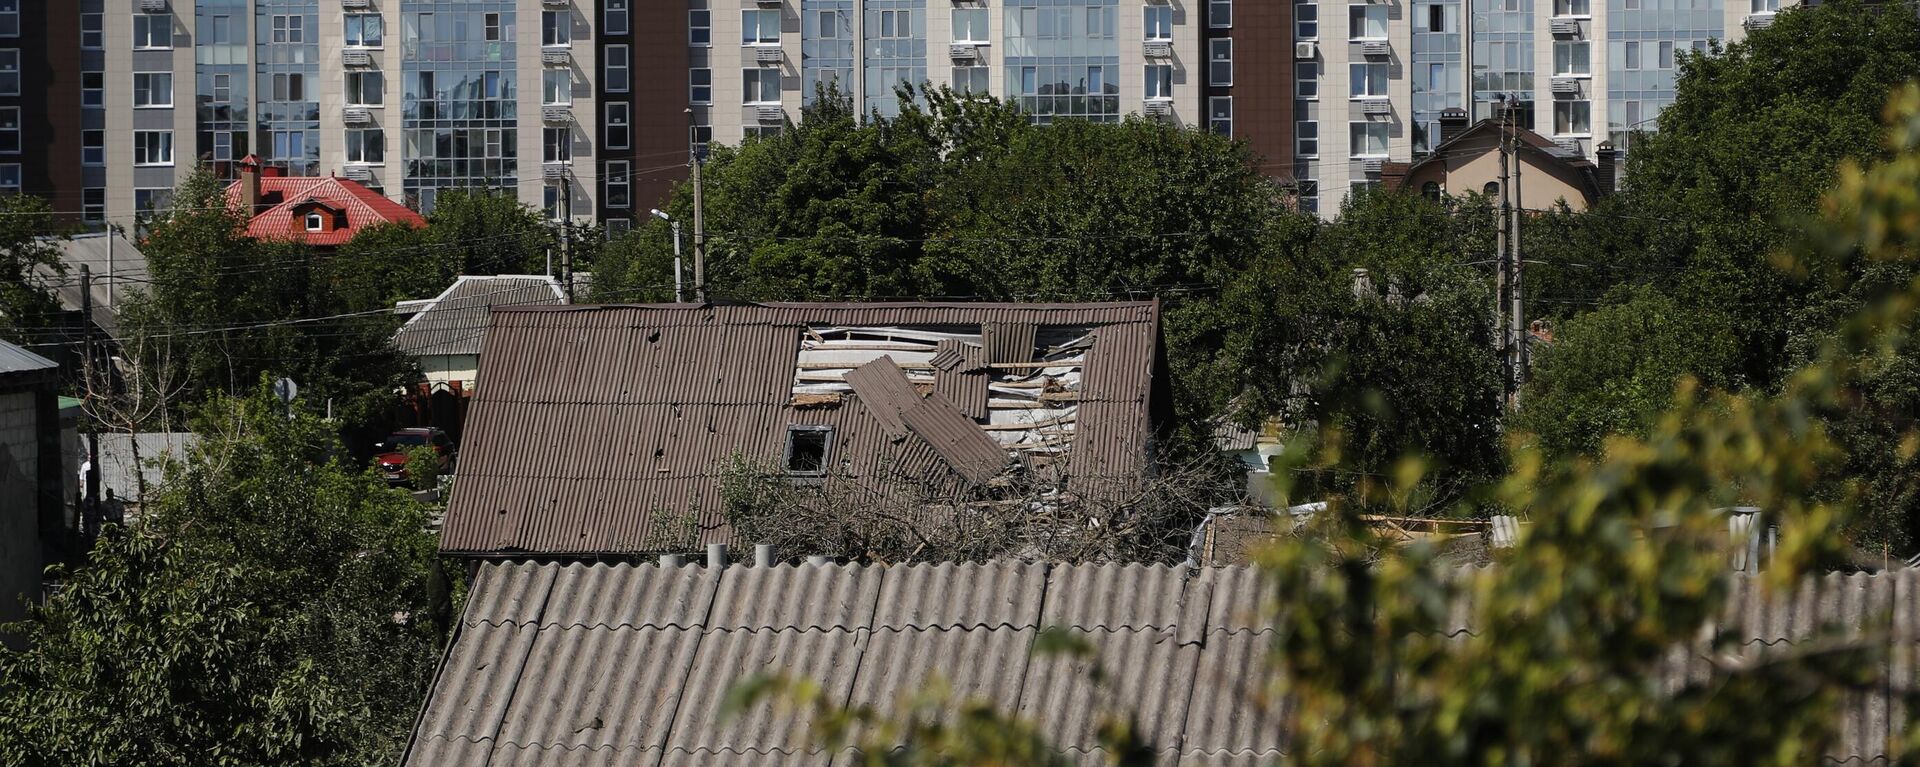 Tại Belgorod, hàng chục ngôi nhà bị hư hại do một cuộc tấn công bằng tên lửa của Lực lượng vũ trang Ukraina - Sputnik Việt Nam, 1920, 14.10.2022